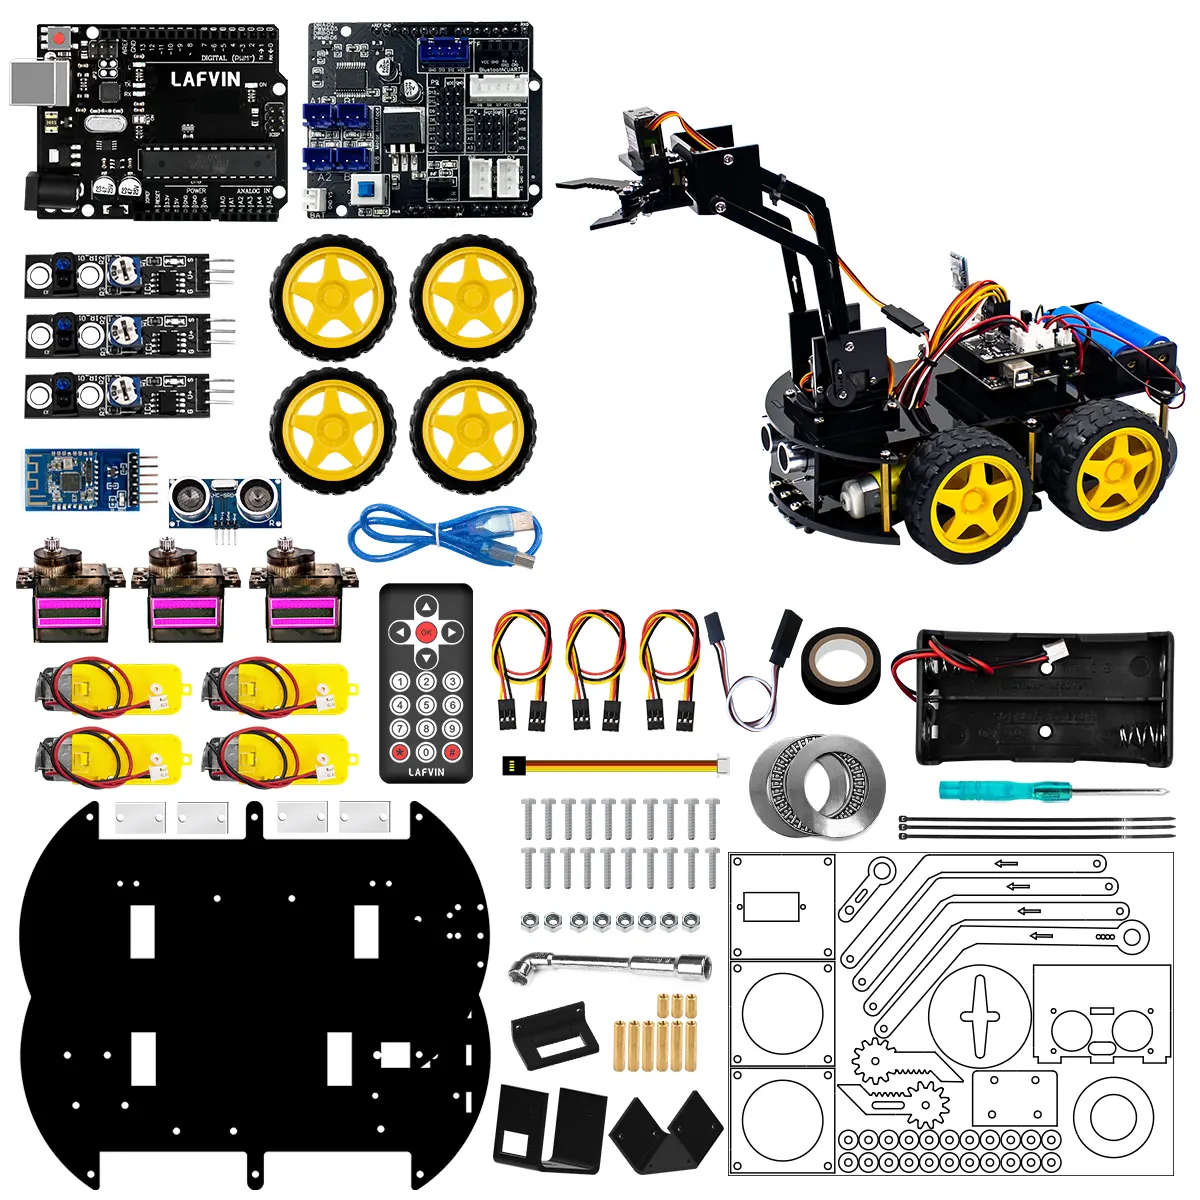 LAFVIN DIY programlama 4DOF mekanik Robot kol 4WD araba öğrenme kiti öğrenci Arduino robotik kitleri